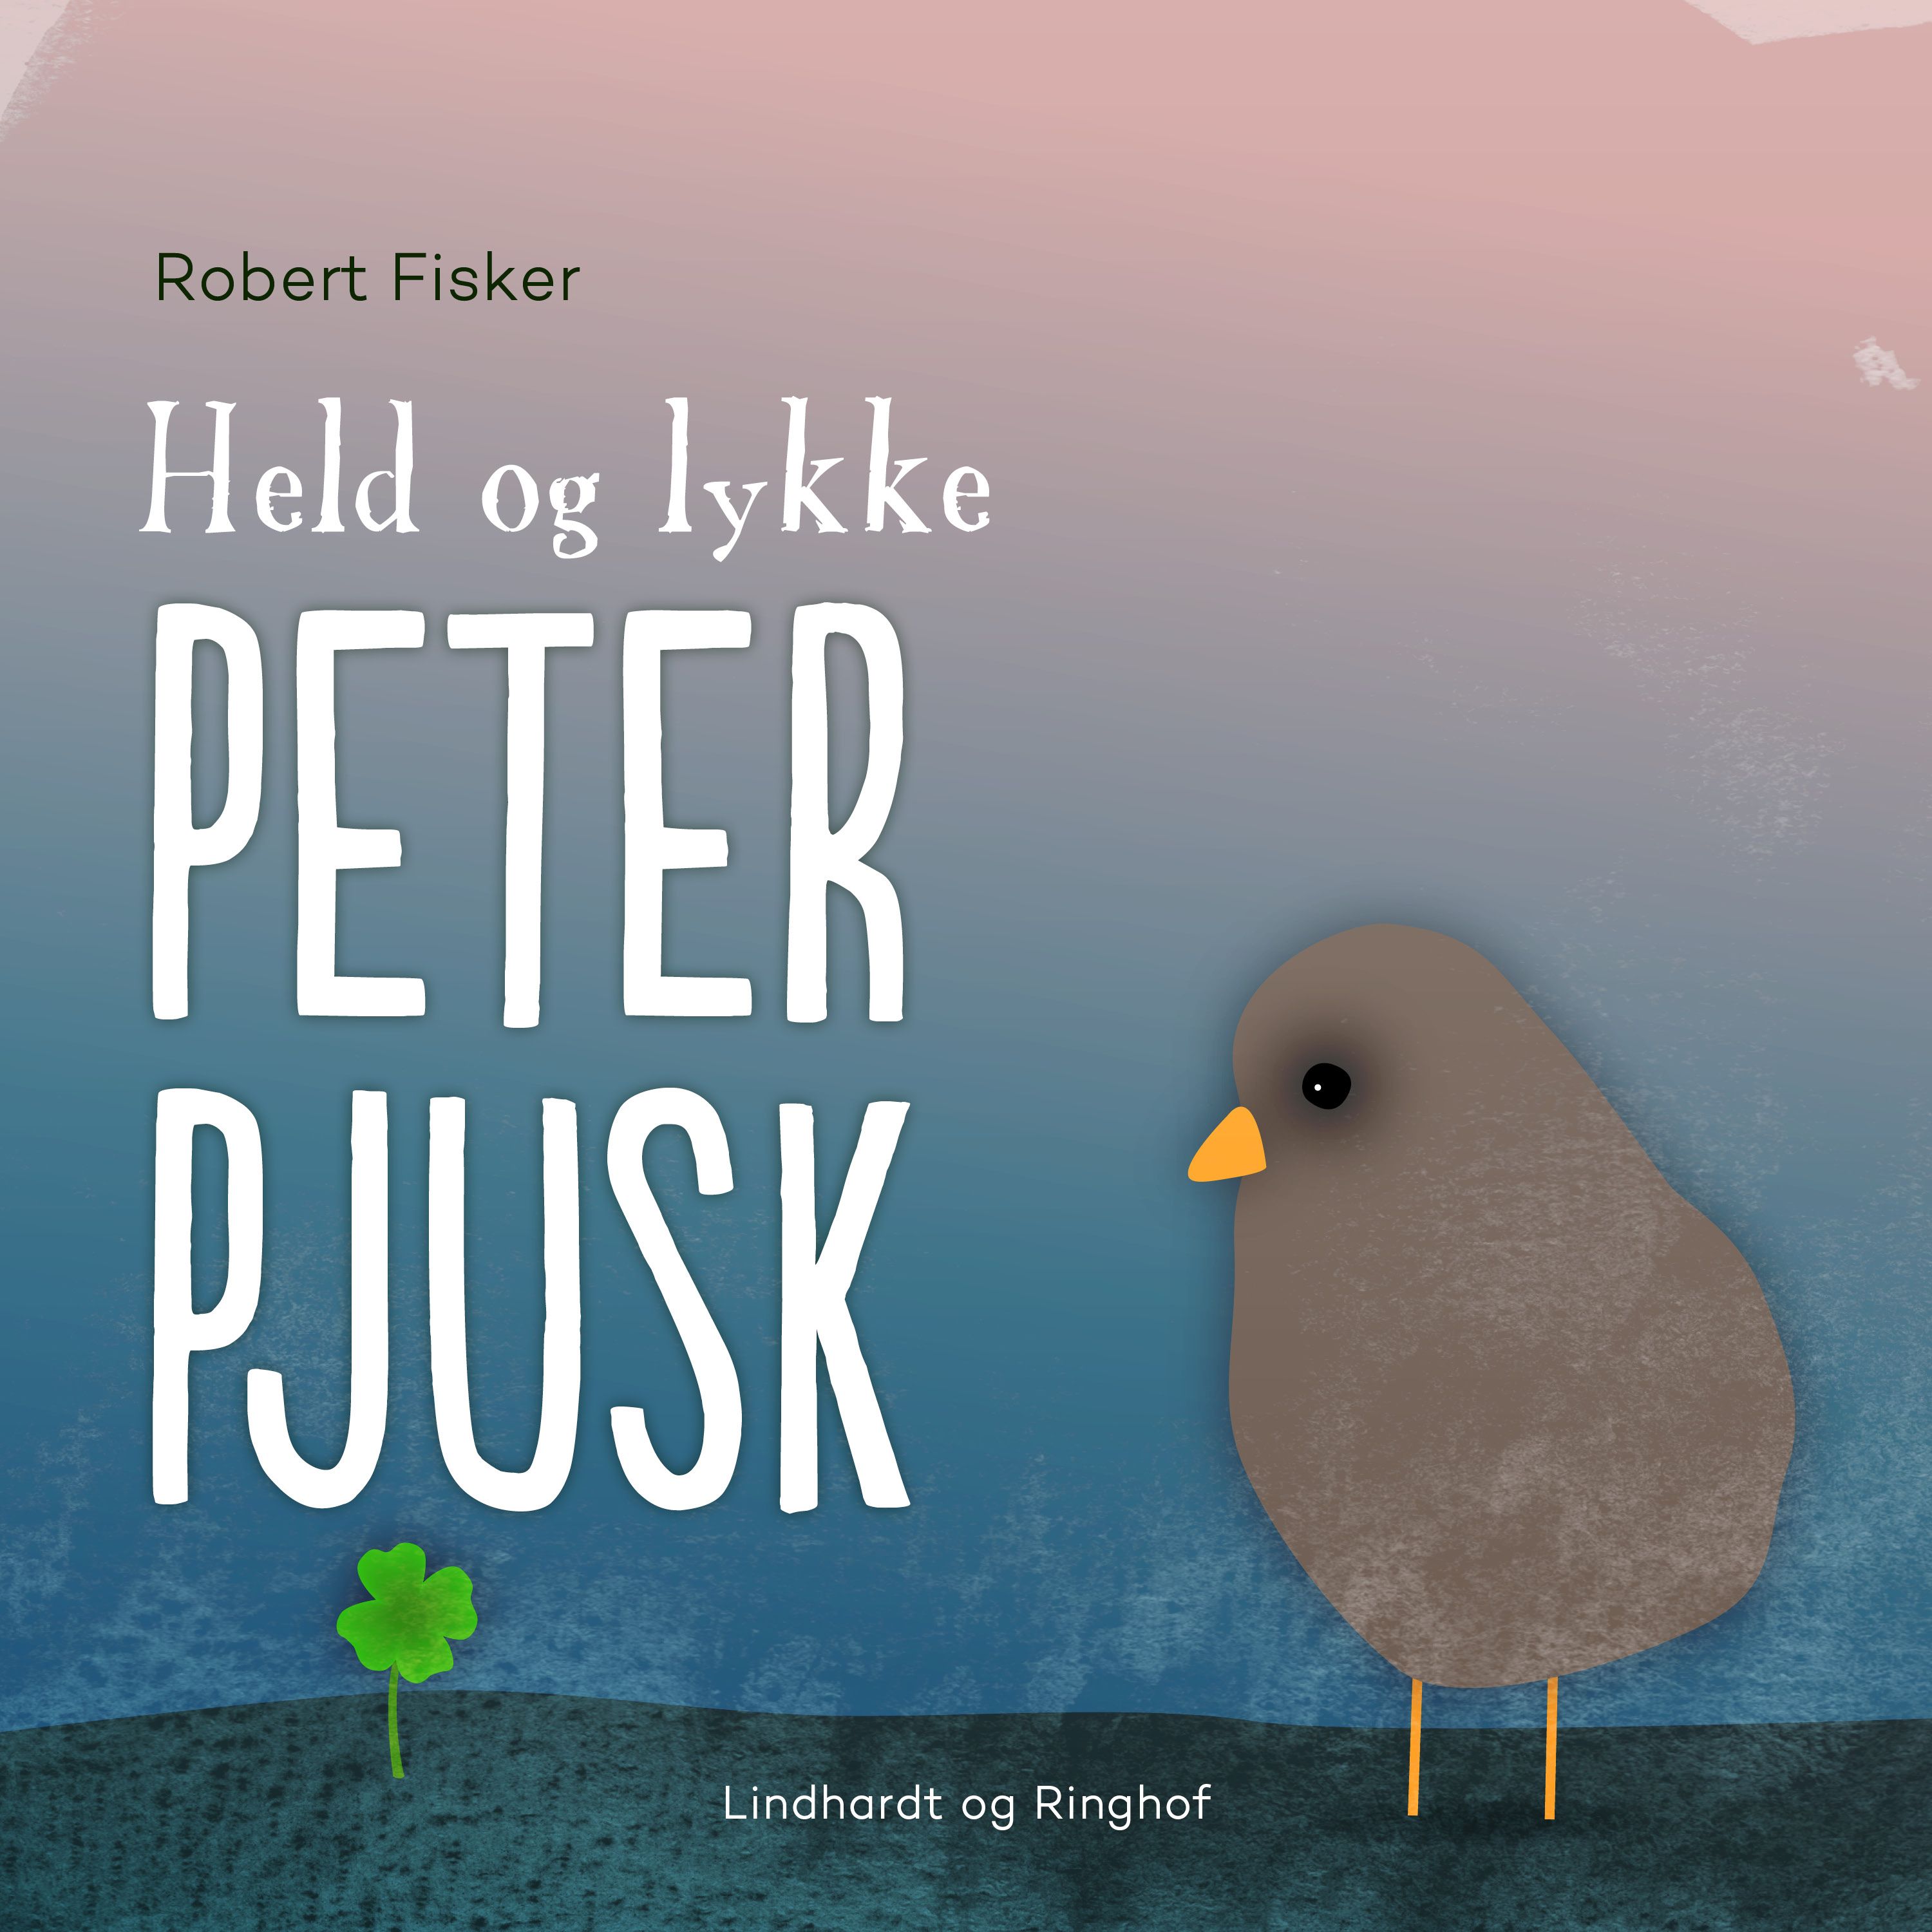 Held og lykke, Peter Pjusk, ljudbok av Robert Fisker